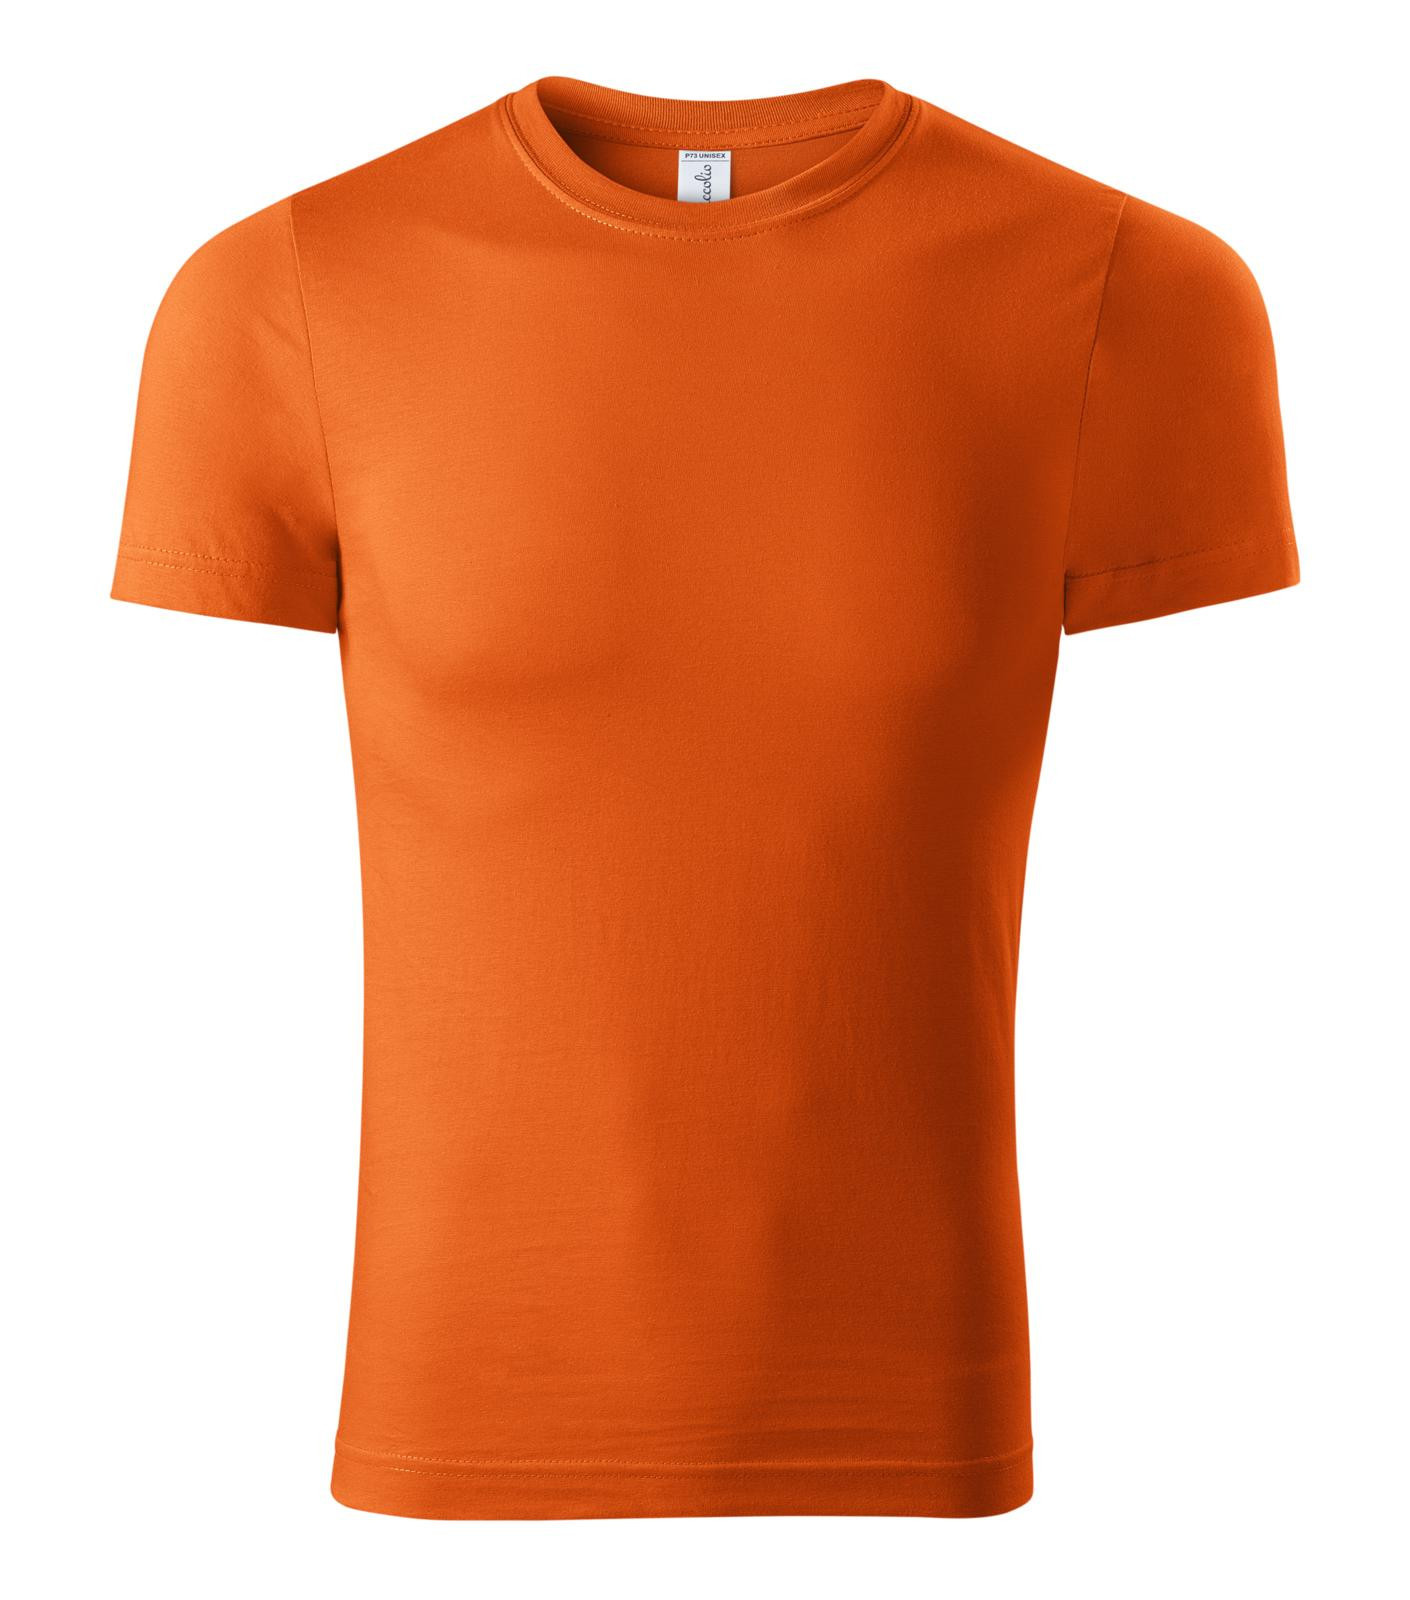 Unisex tričko Piccolio Paint P73 - veľkosť: S, farba: oranžová